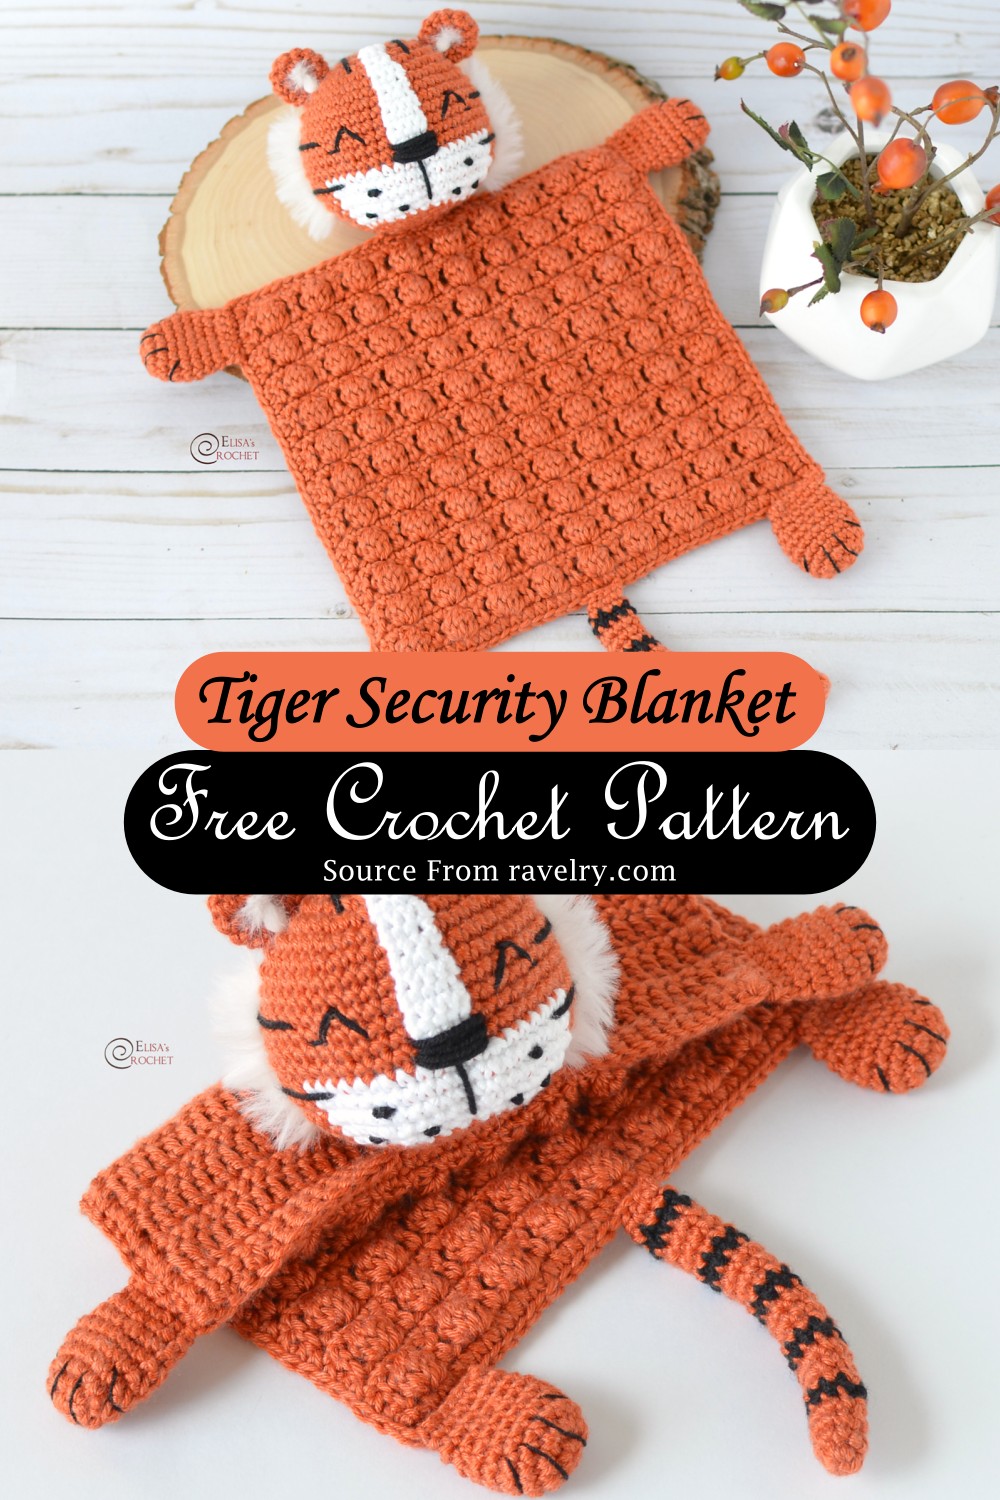 Tiger Security Blanket